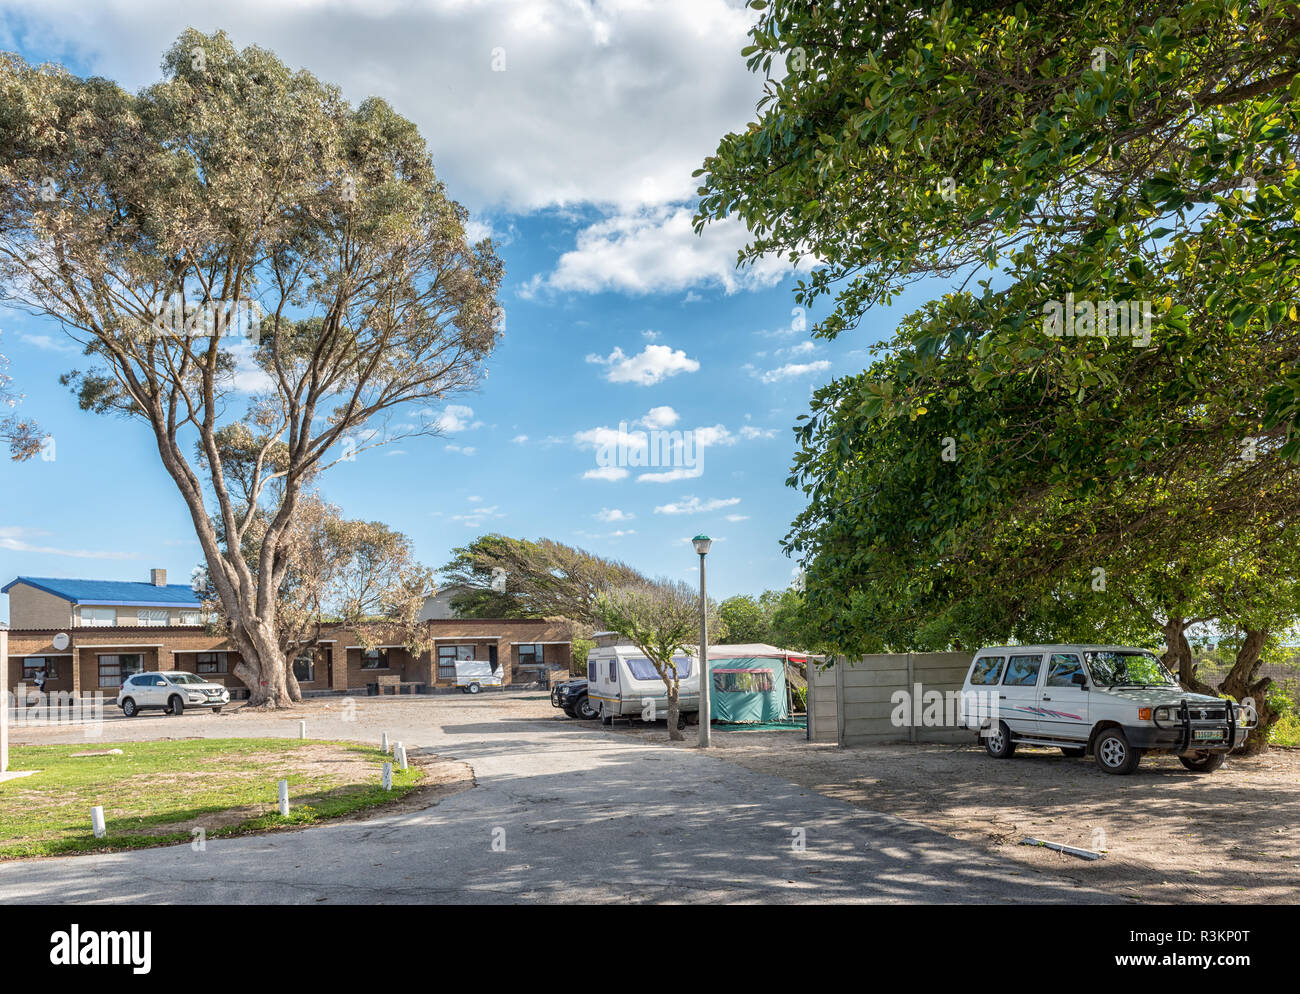 DWARSKERSBOS, SÜDAFRIKA, 21. AUGUST 2018: ein Ferienort in Dwarskersbos in der Western Cape Provinz. Einen Wohnwagen und Fahrzeugen sind sichtbar Stockfoto